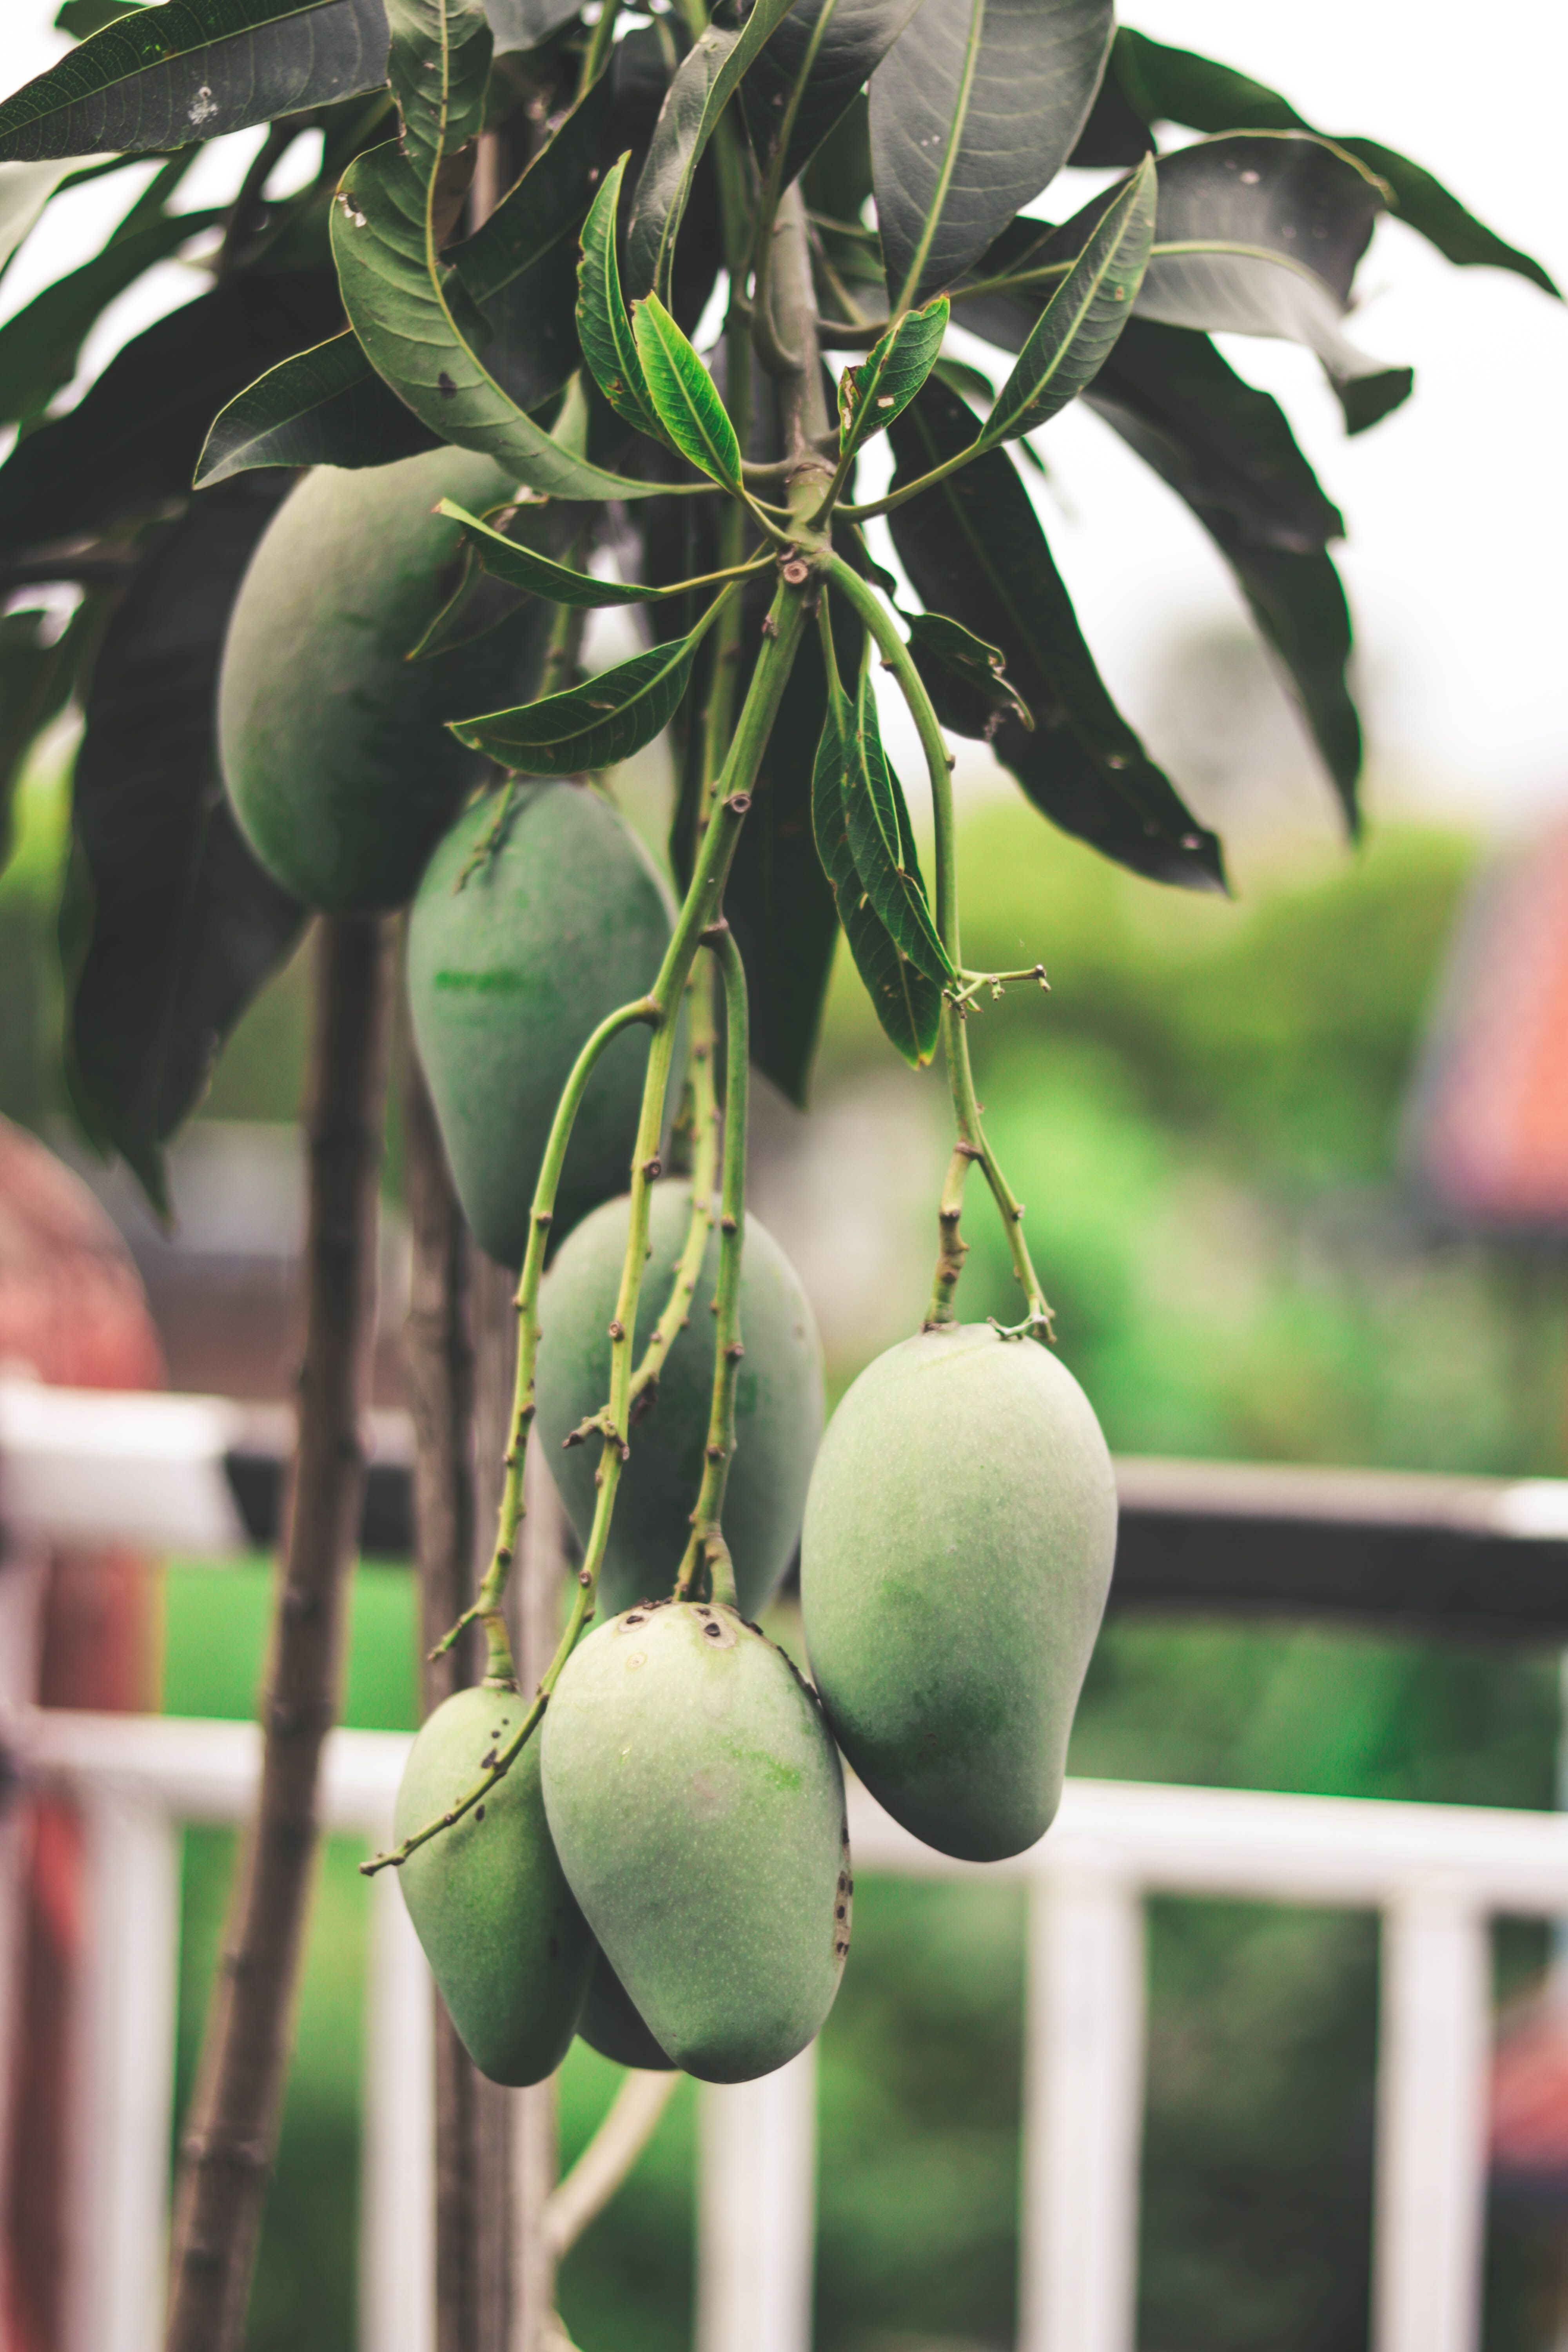 Green Mango Fruits Hanging on Tree · Free